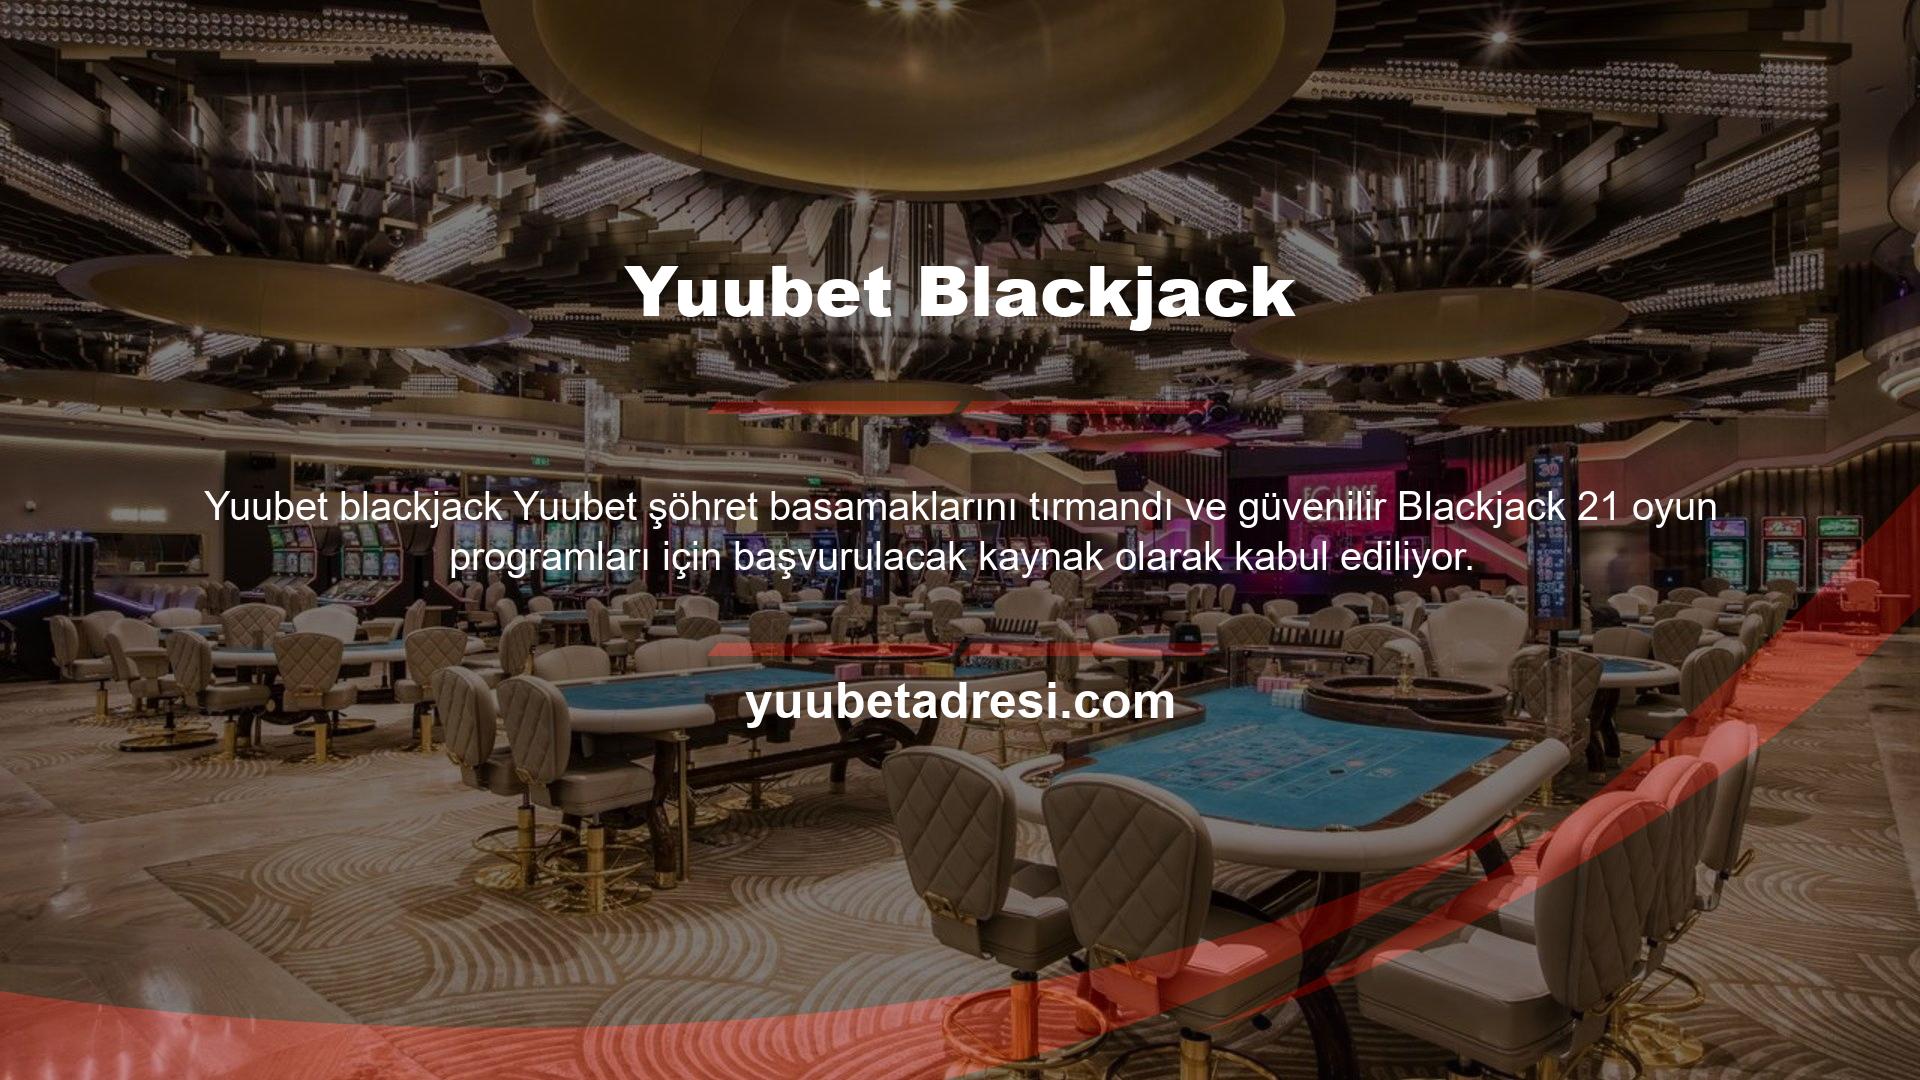 Yuubet, geniş oyun yelpazesi, yüksek maç oranları ve promosyonları ile tüm oyunlarında etkileyici olan bir bahis sitesidir